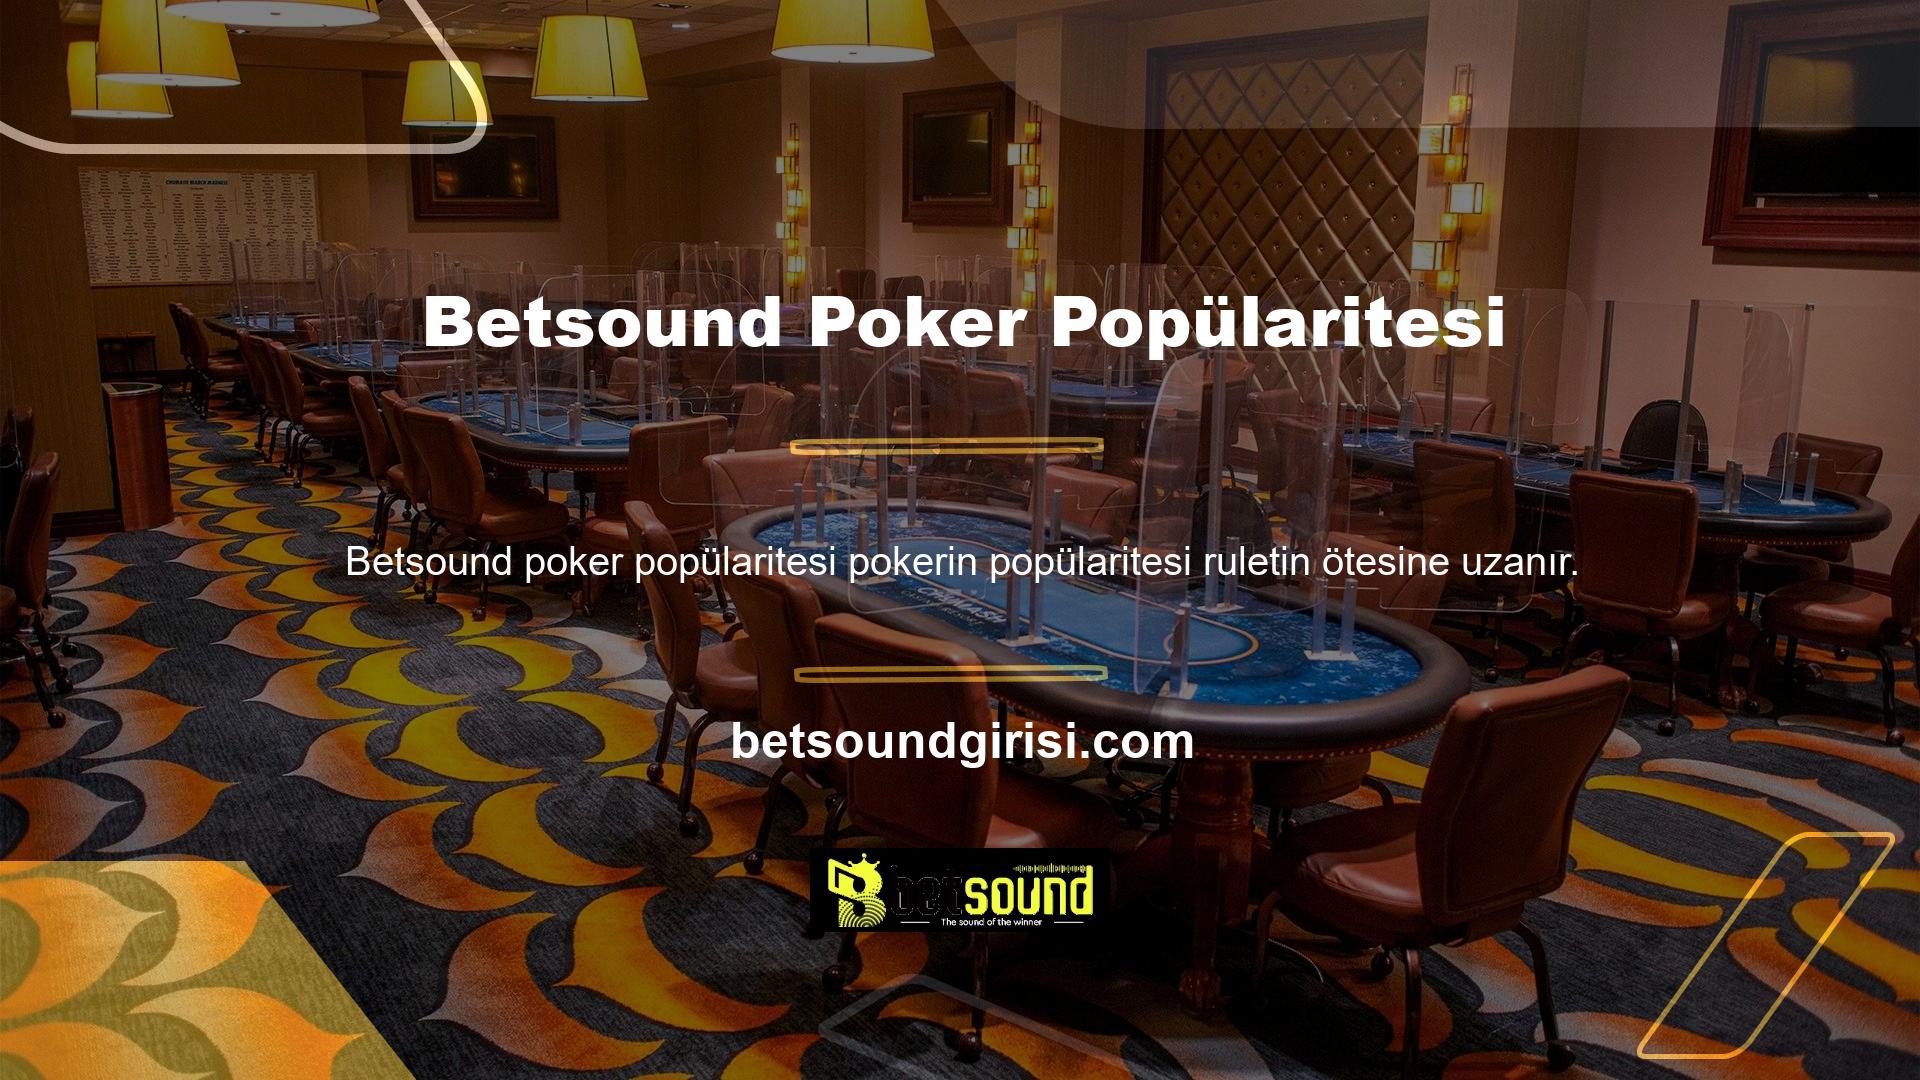 Online canlı casino insanlara hayallerini dekore etme imkânı verir